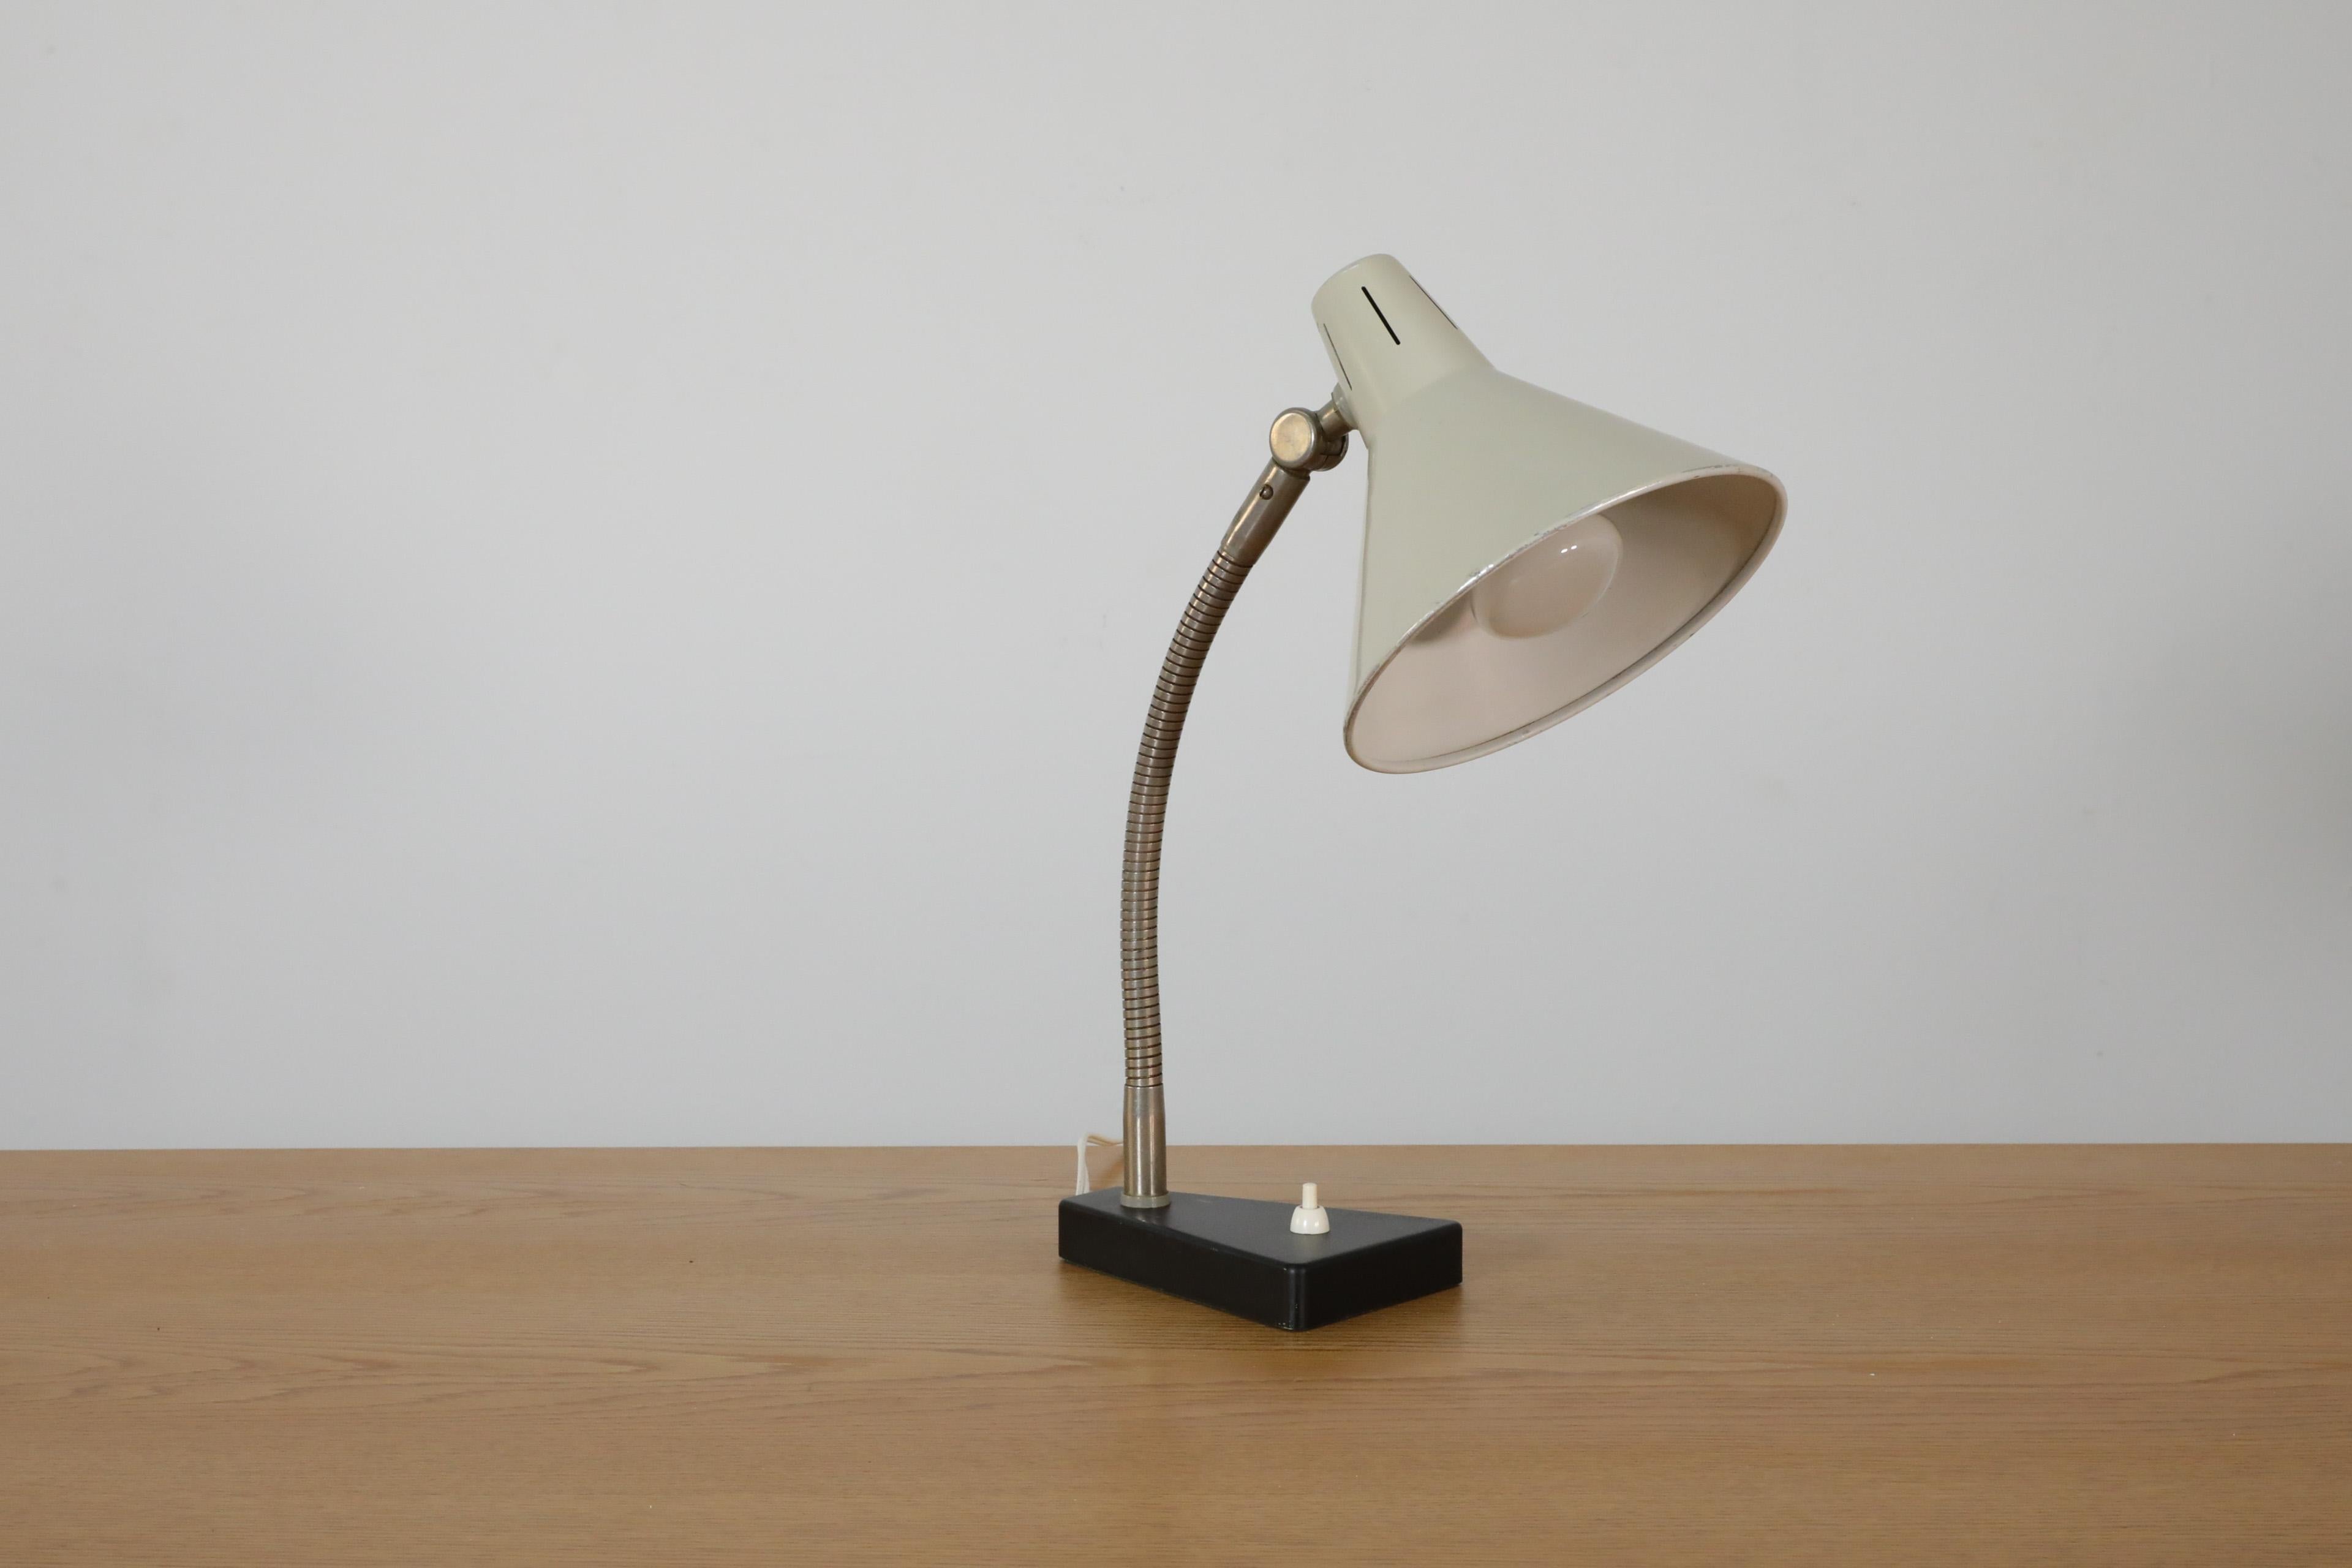 Metal Hala Zeist Industrial Gooseneck Table Lamp For Sale